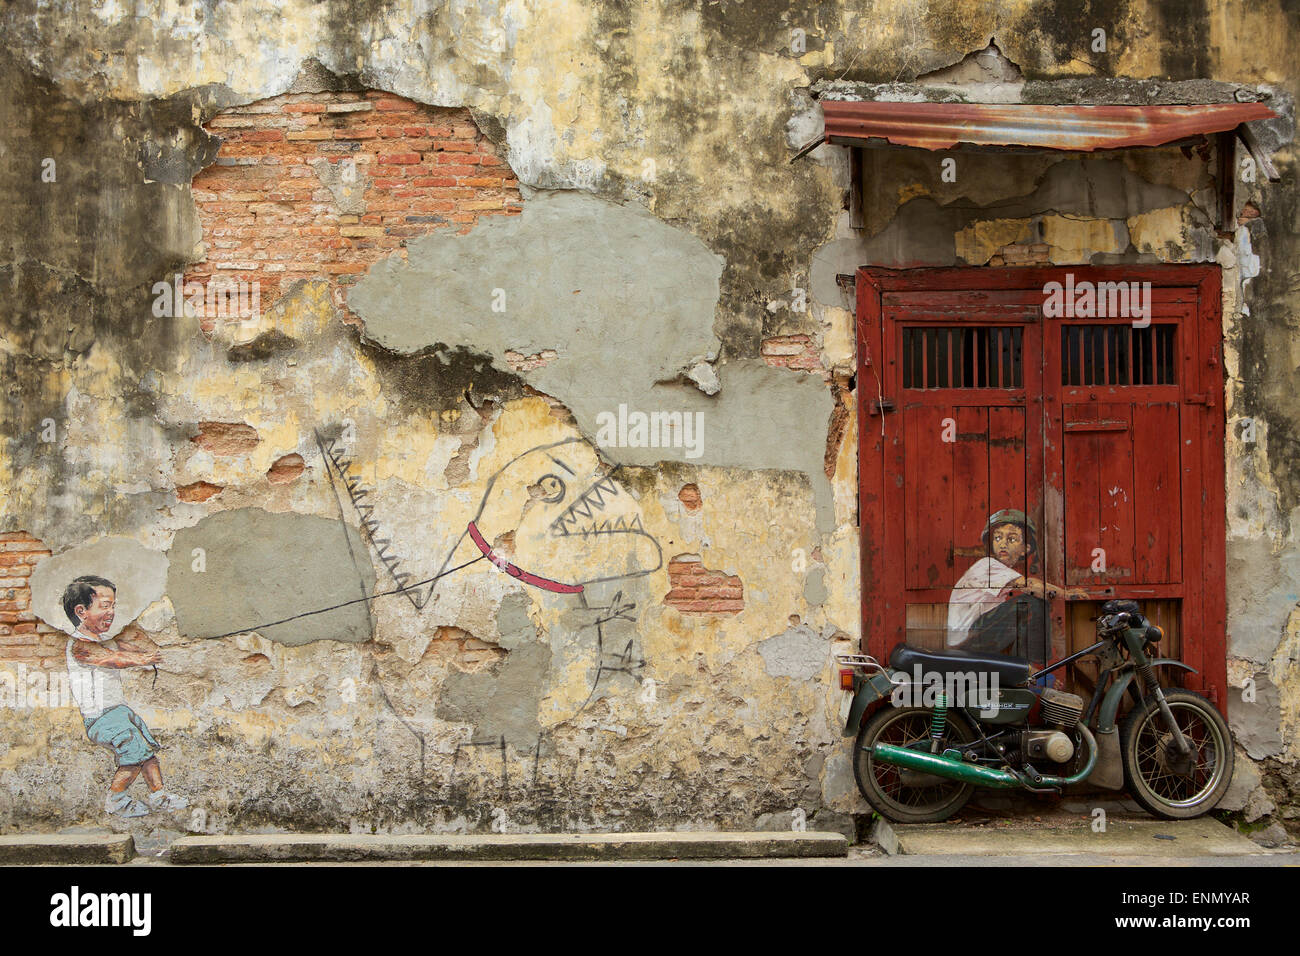 Tecnica mista su una stessa parete ruvida in Penang Malaysia. Graffiti di dinosauro e ragazzi asiatici sulla motocicletta. Foto Stock